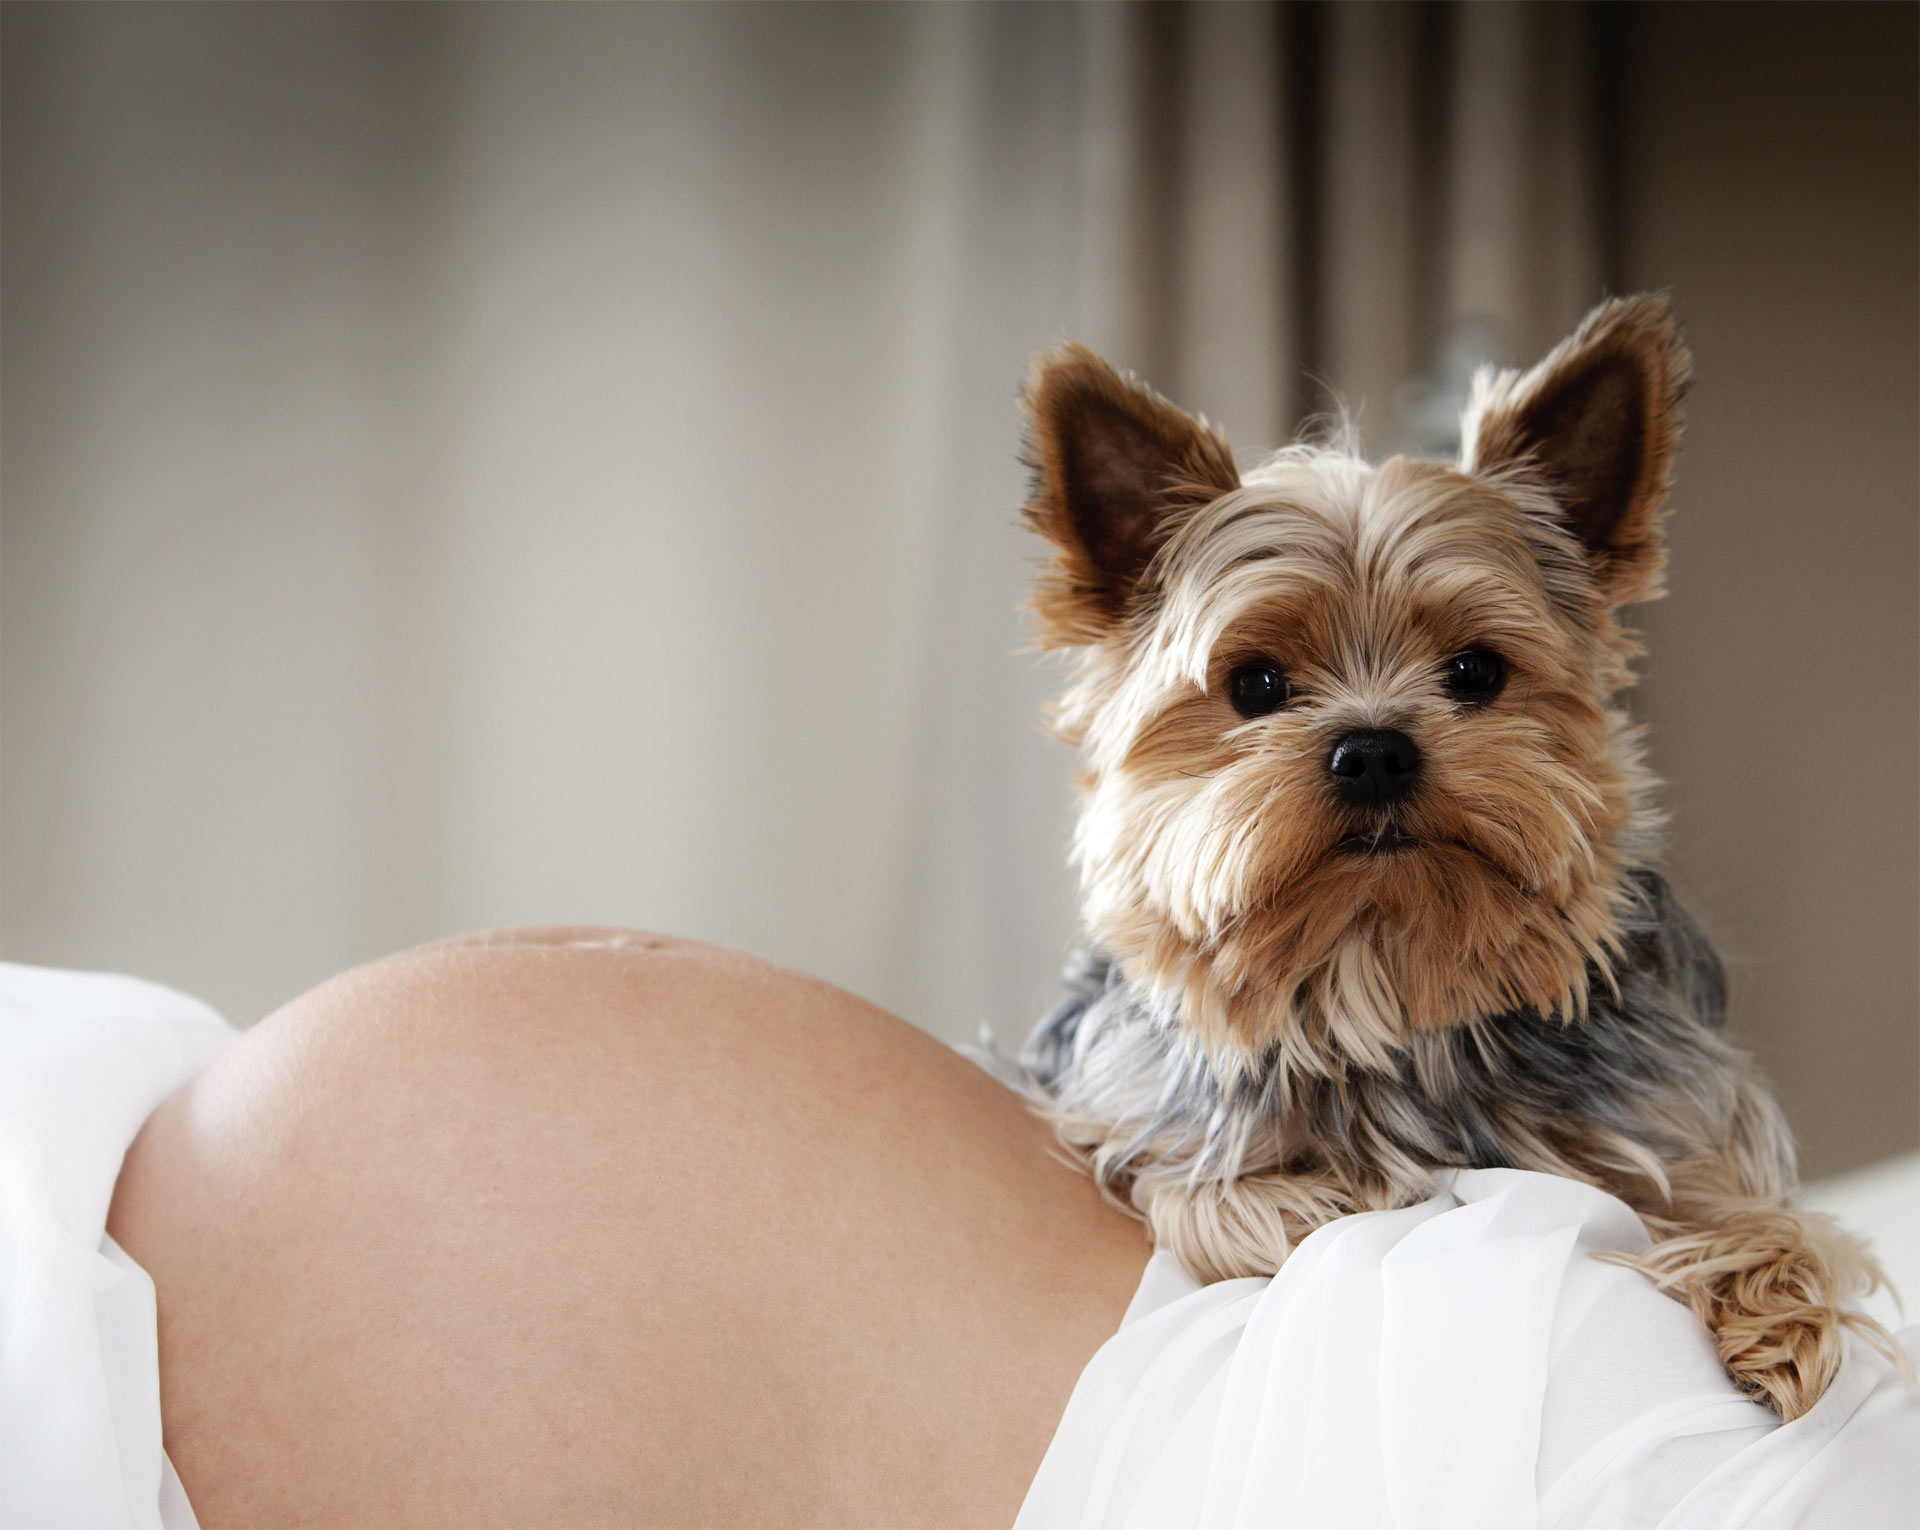 Los perros se muestran muy protectores con sus dueñas durante el momento del embarazo, por eso compartimos fotos de sus reacciones